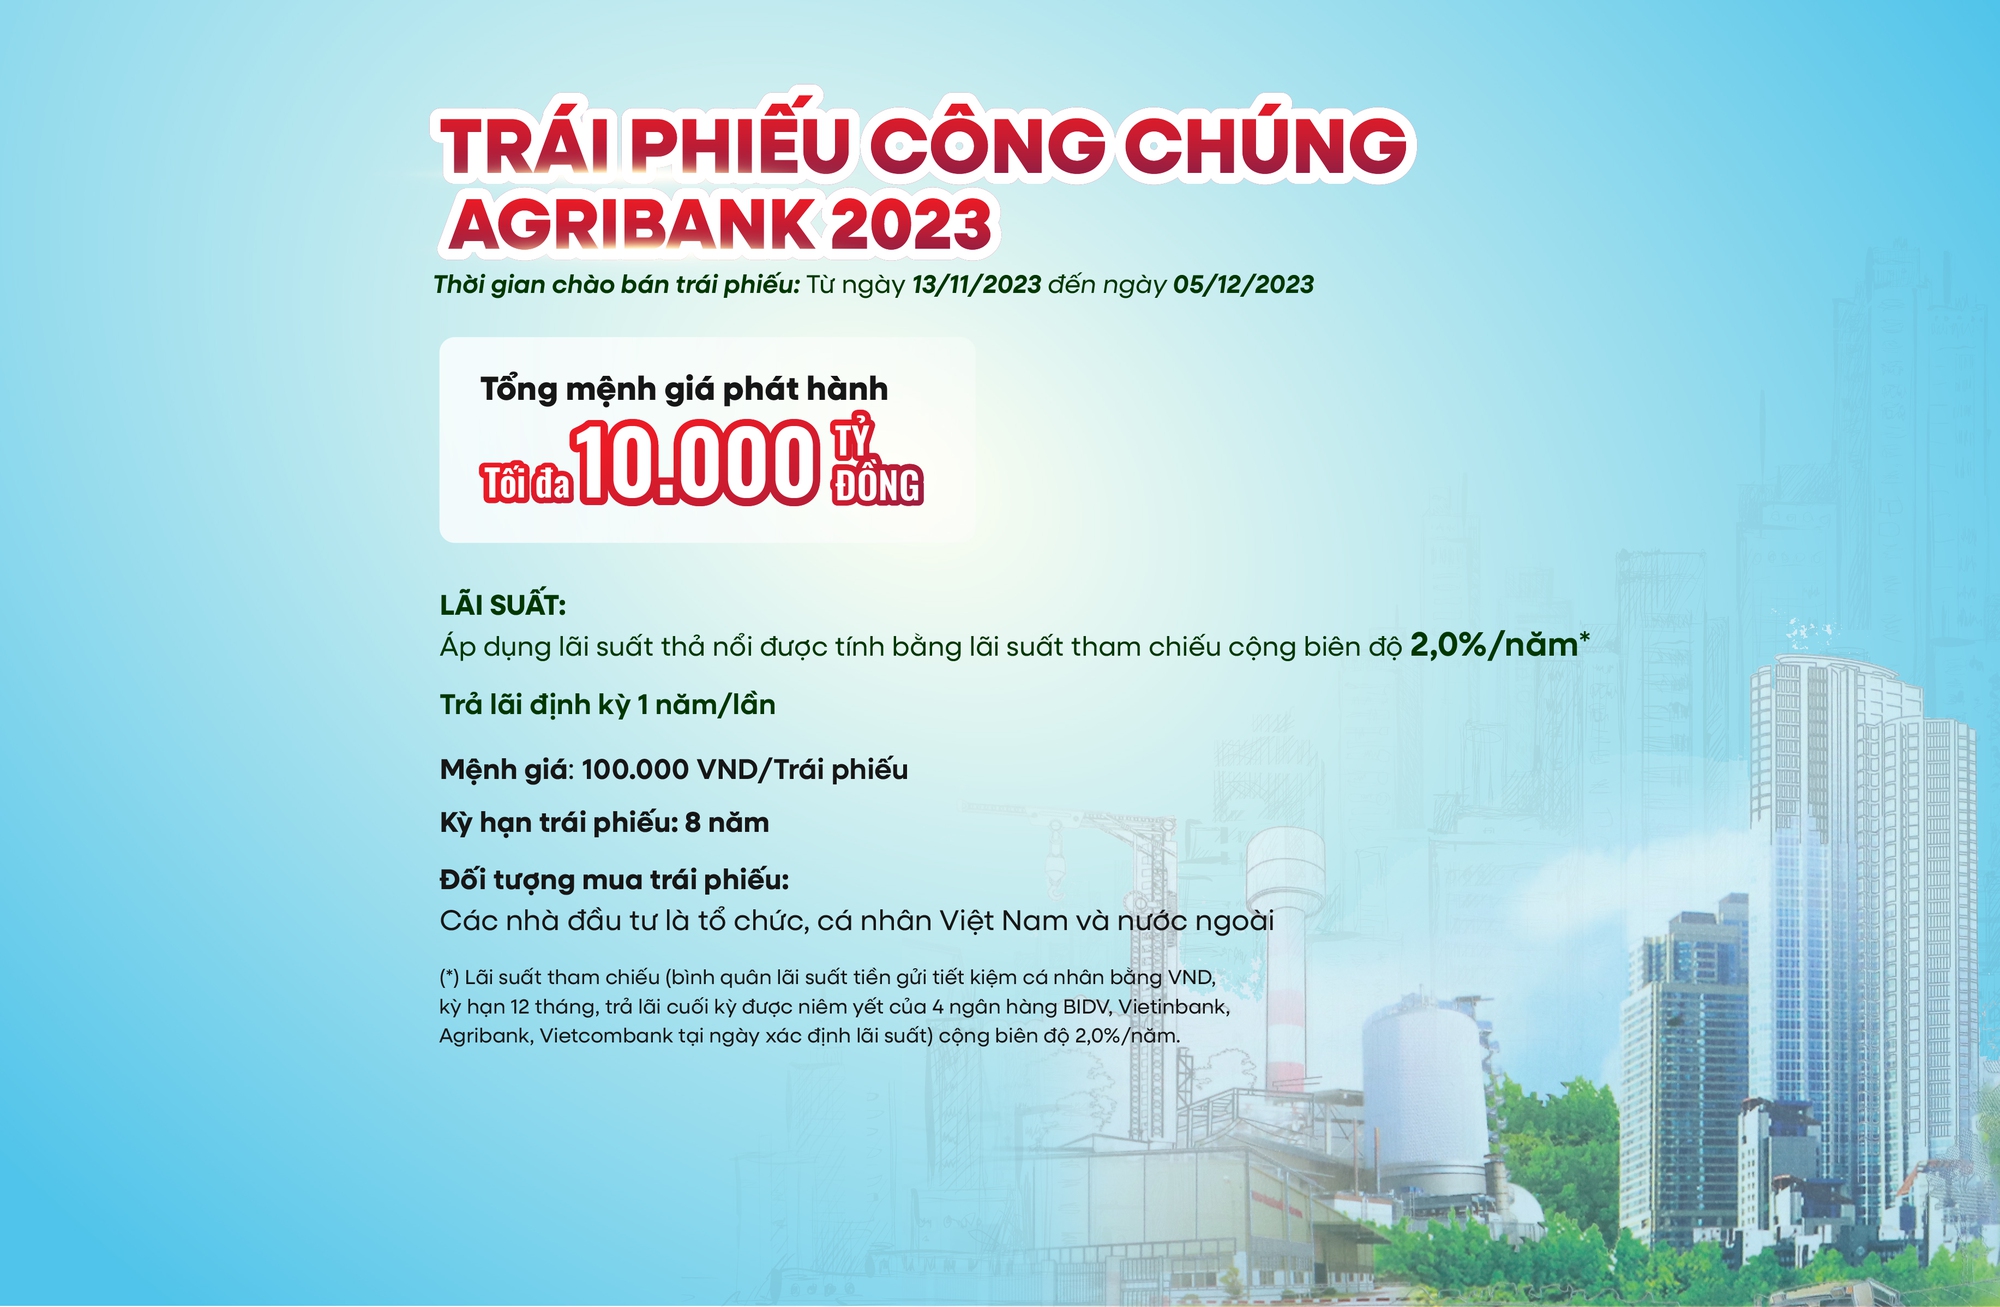 Agribank phát hành thành công 10.000 tỷ đồng trái phiếu ra công chúng năm 2023 - Ảnh 2.